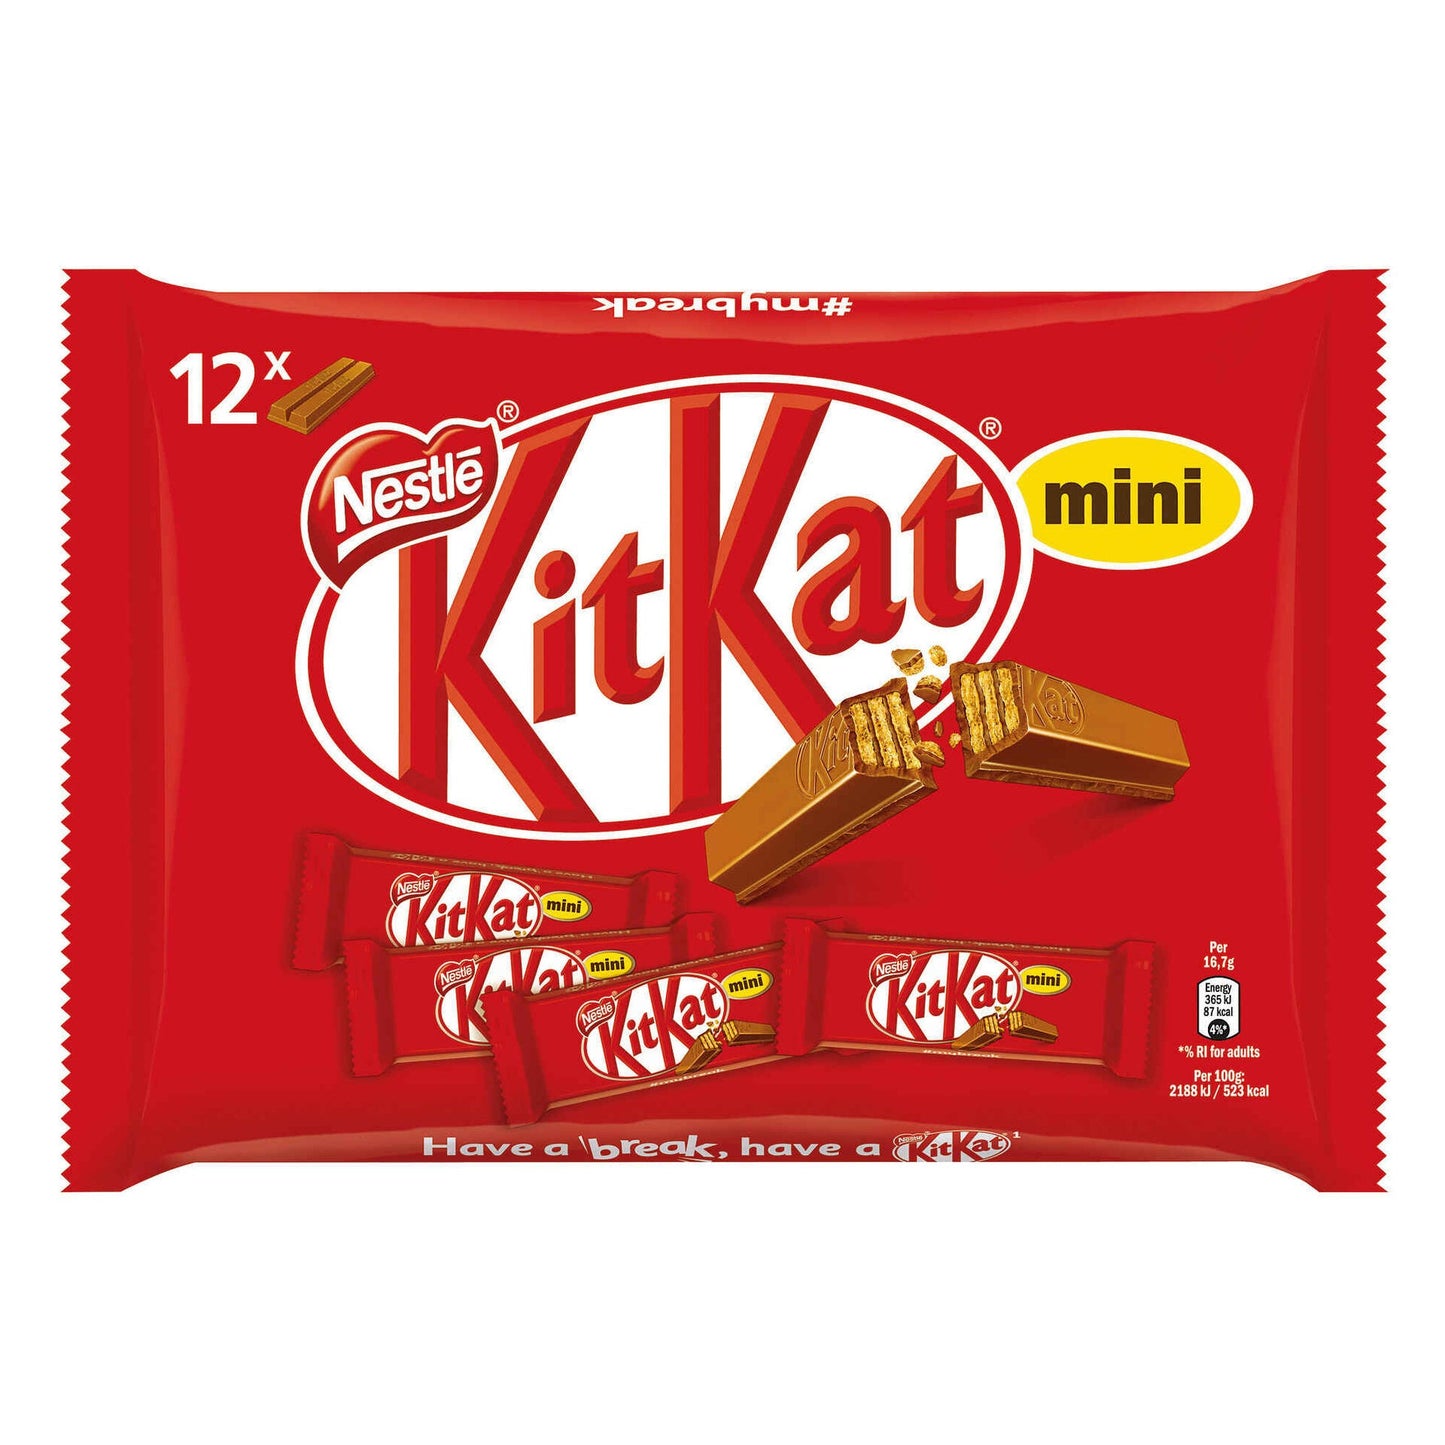 Kit-Kat Mini Pack with 12units